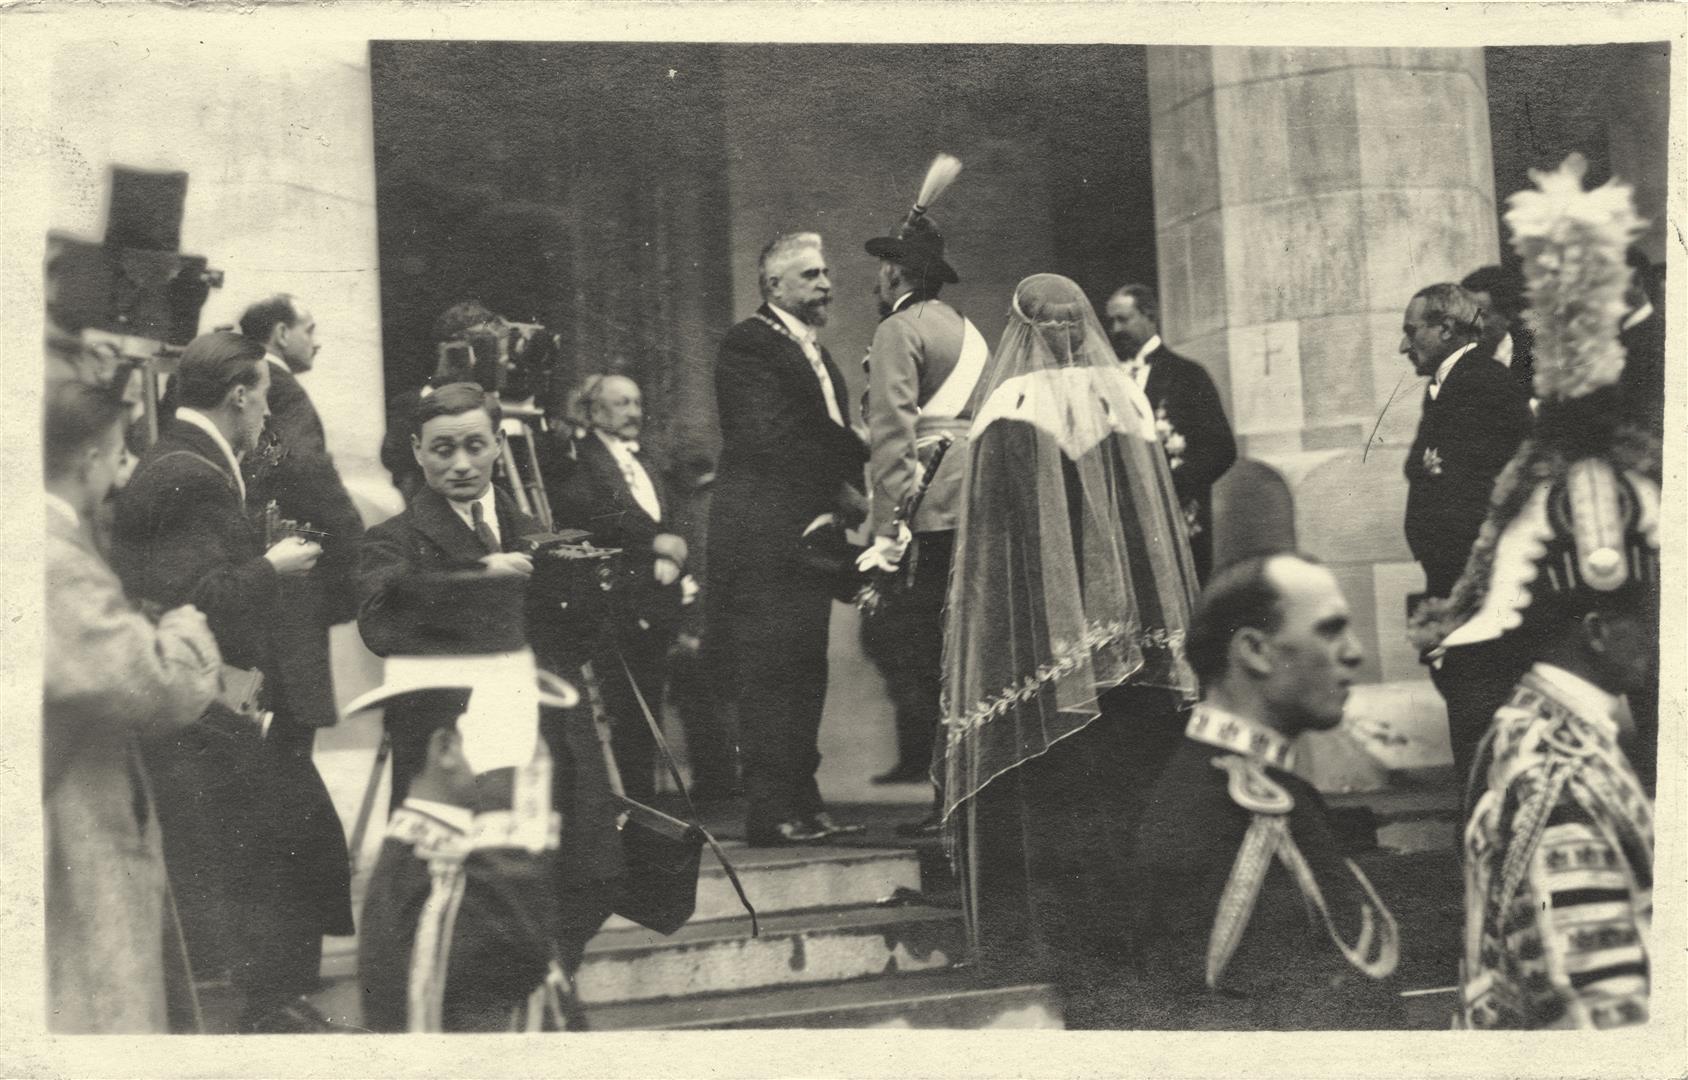 Regele Ferdinand şi Ion I. C. Brătianu, preşedintele Consiliului de Miniştri, în pridvorul catedralei încoronării (15 octombrie 1922).